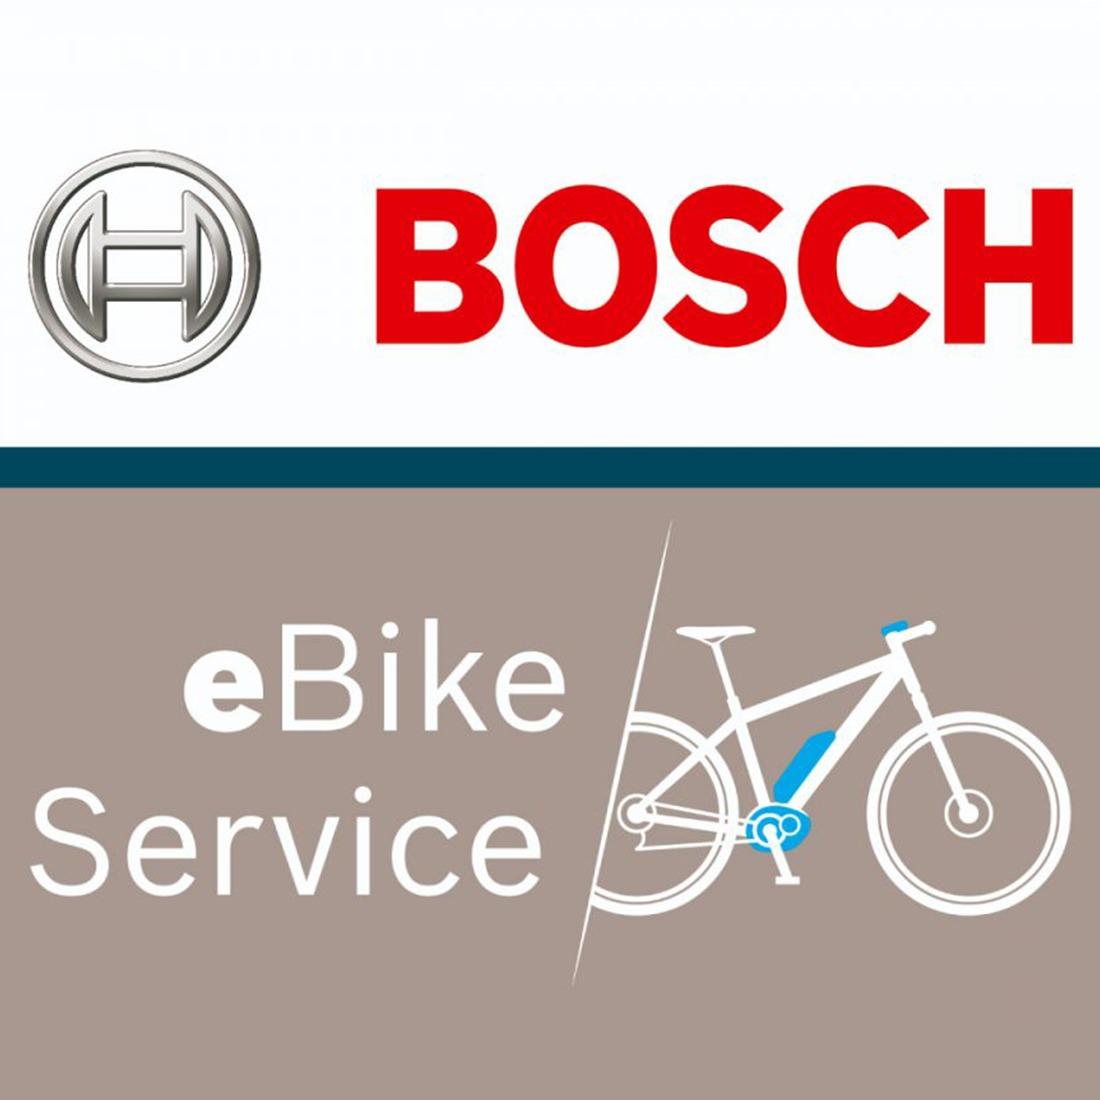 Centro Autorizzato Assistenza Bosch eBike Service. Forniamo ogni genere di assistenza ai sempre più numerosi e-bikers, non solo sui nostri marchi, ma su tutto il mondo motorizzato Bosch in genere